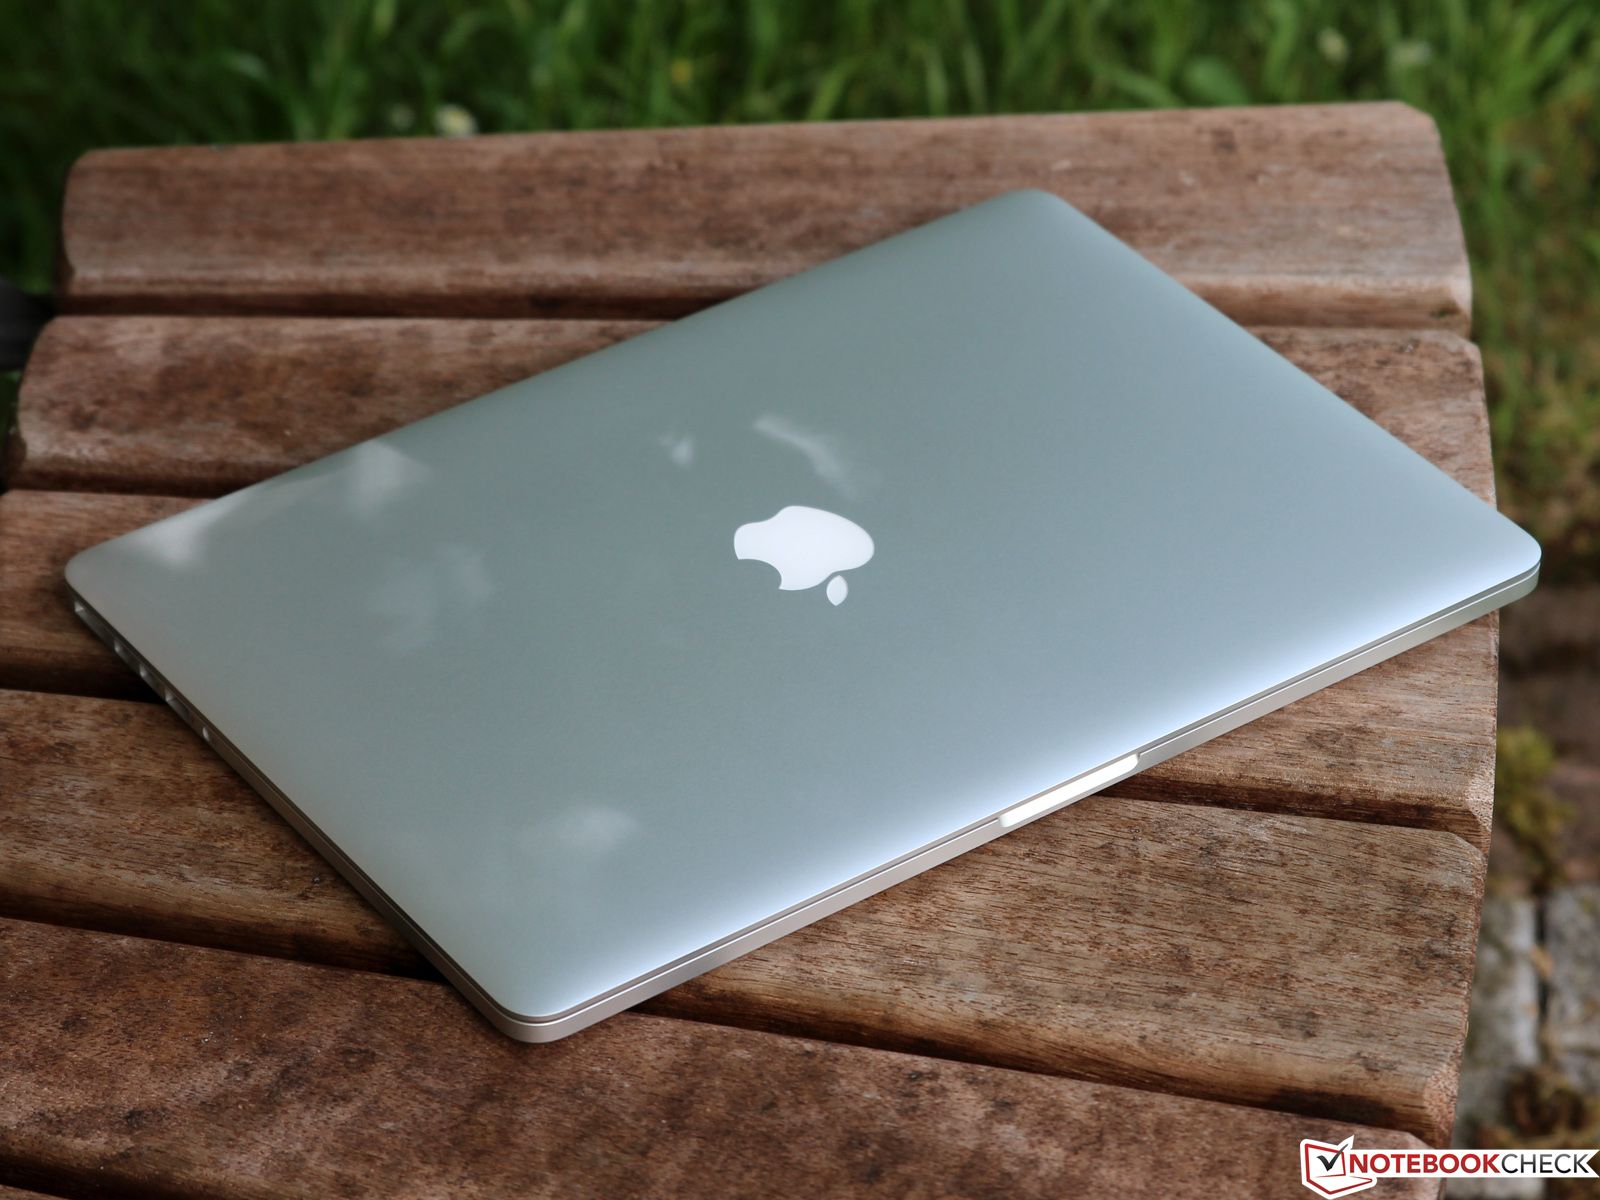 2015 macbook pro 15 inch